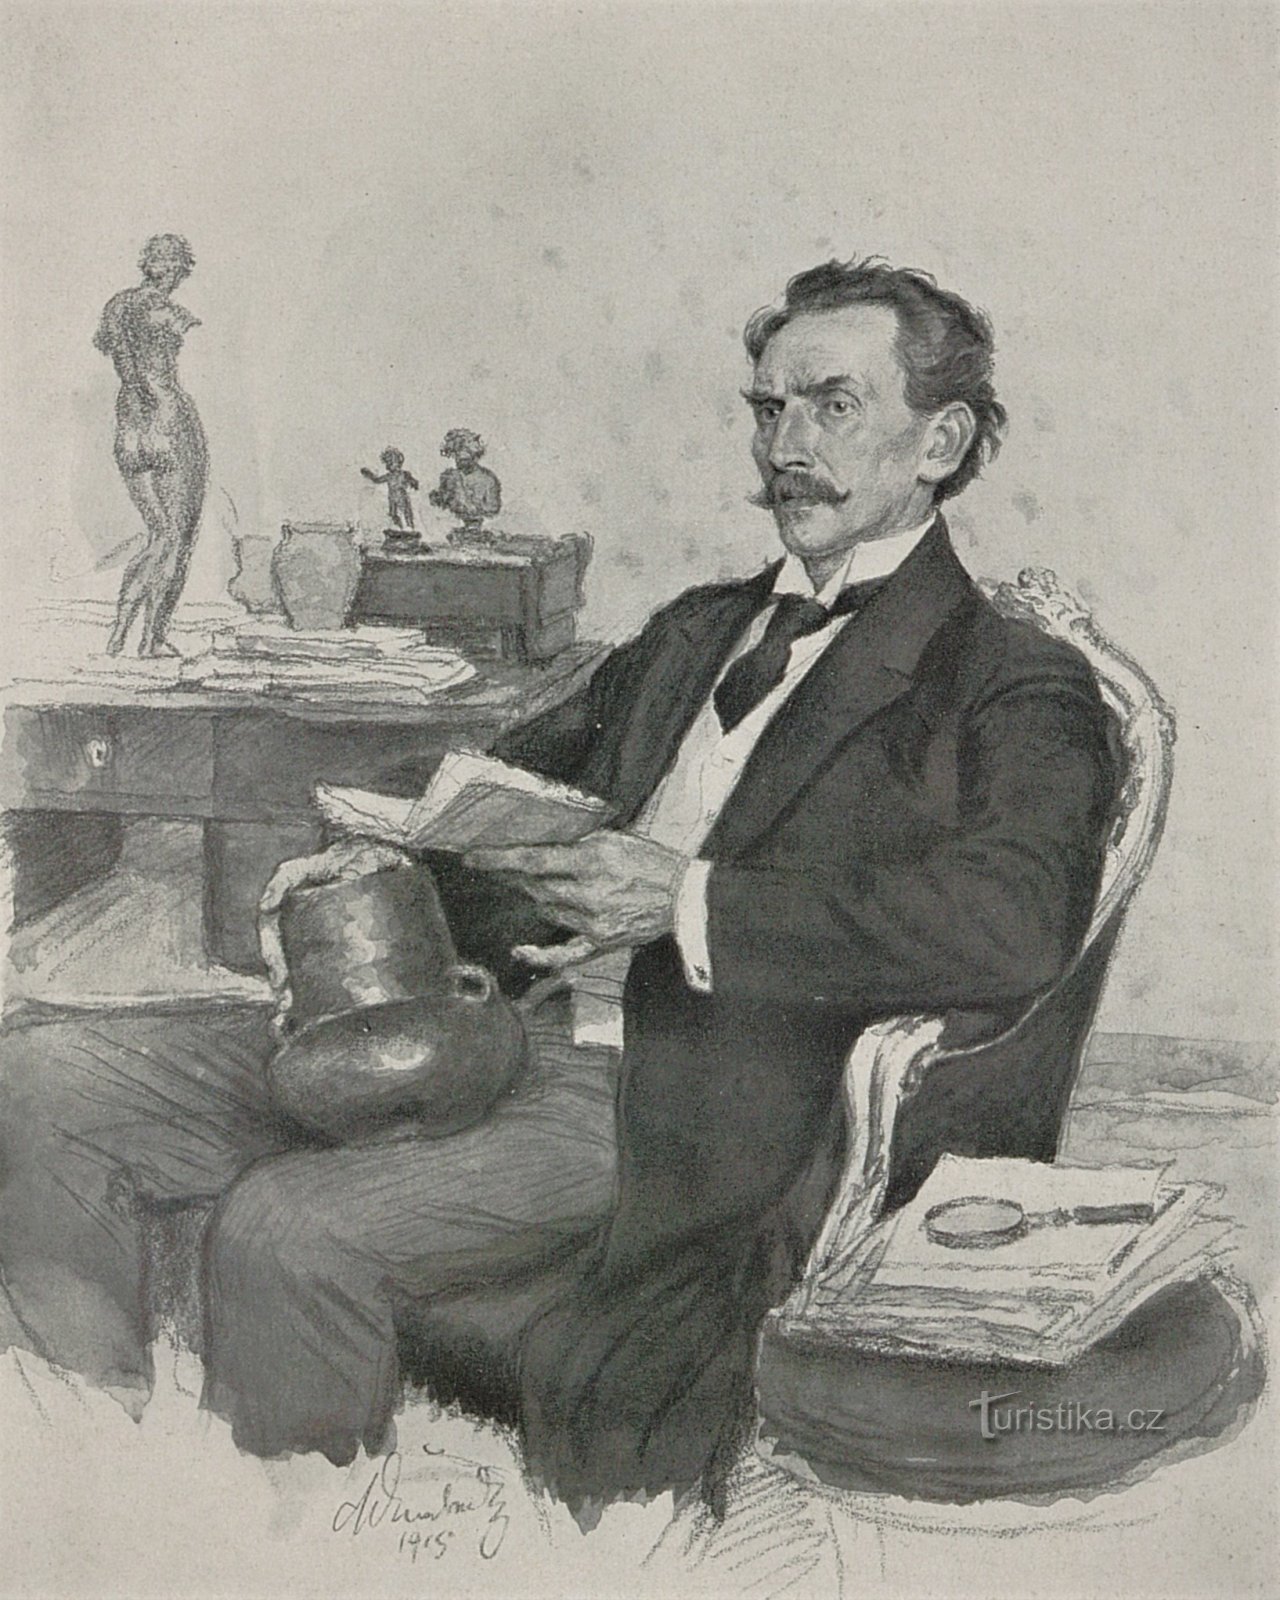 博士号1915年にミコラーシュ・アルシュが描いたルボル・ニーデルレ